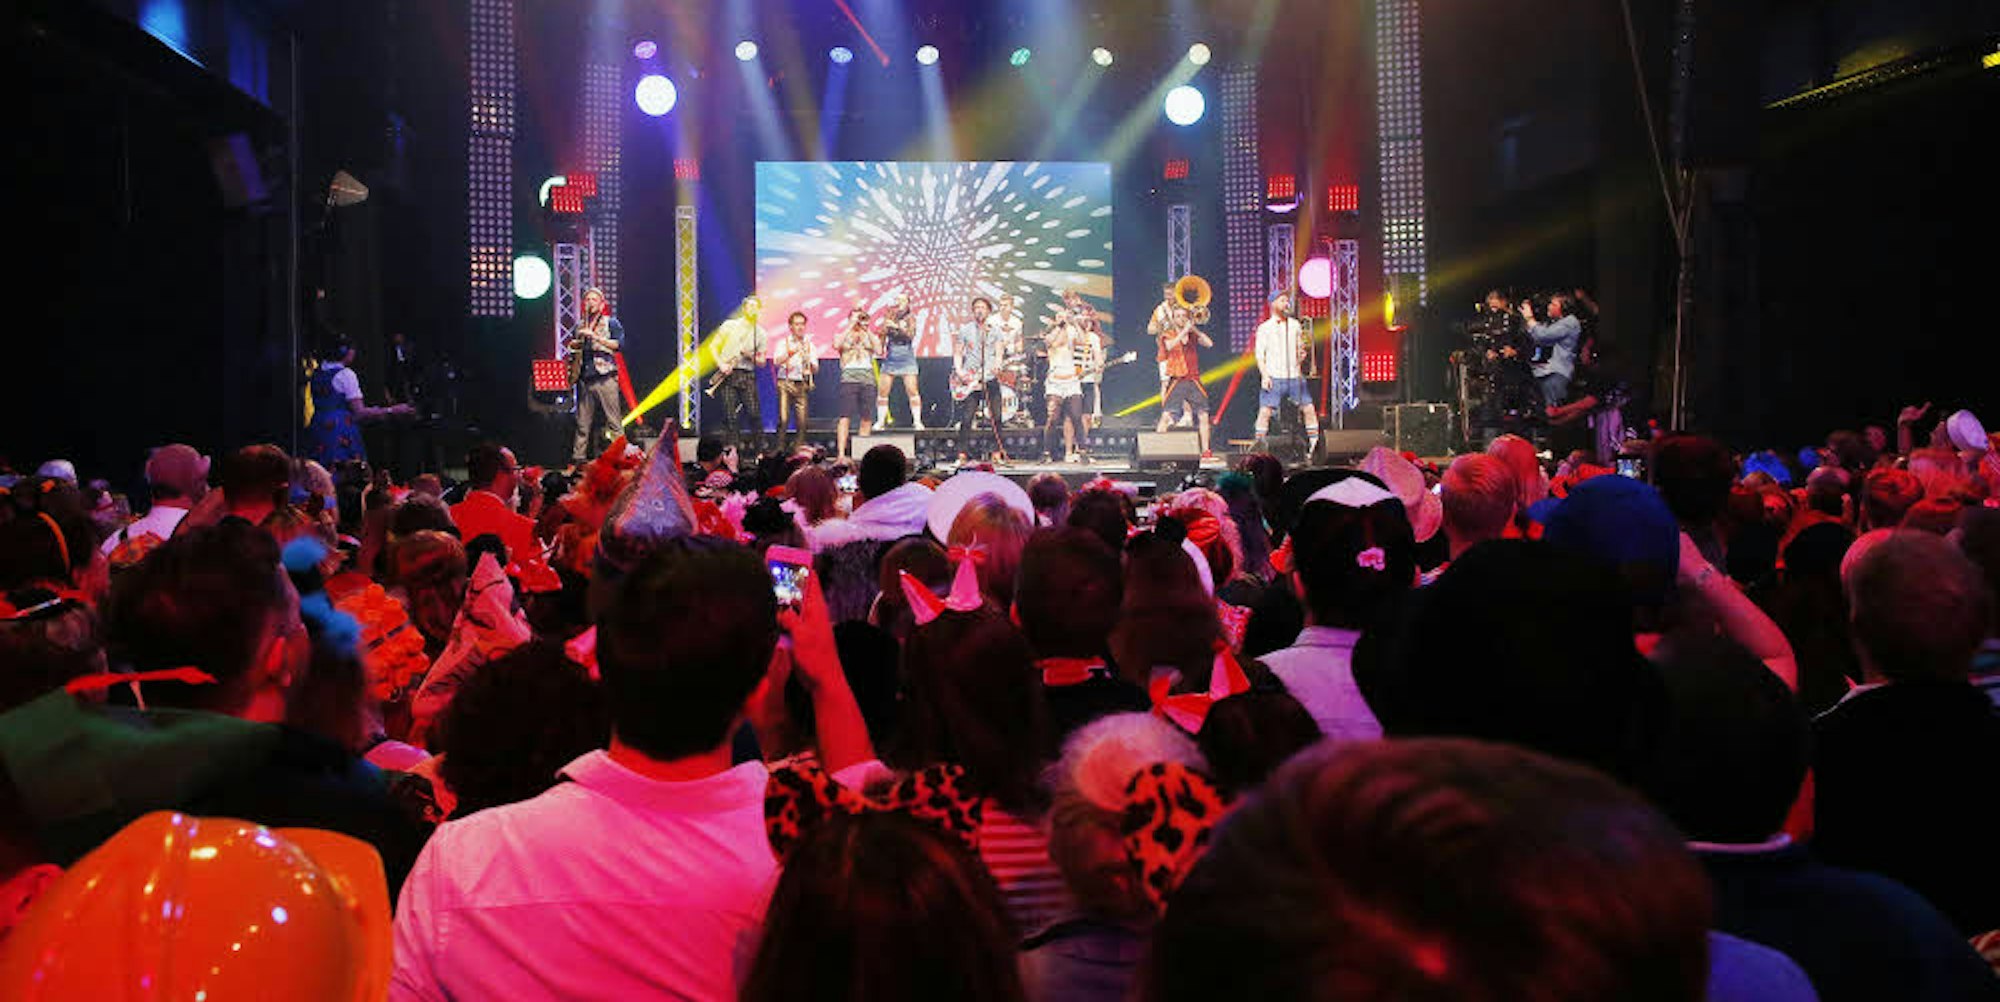 Bunte Band, buntes Publikum: Querbeat spielen, singen und tanzen vor 2.500 kostümierten Fans im Palladium